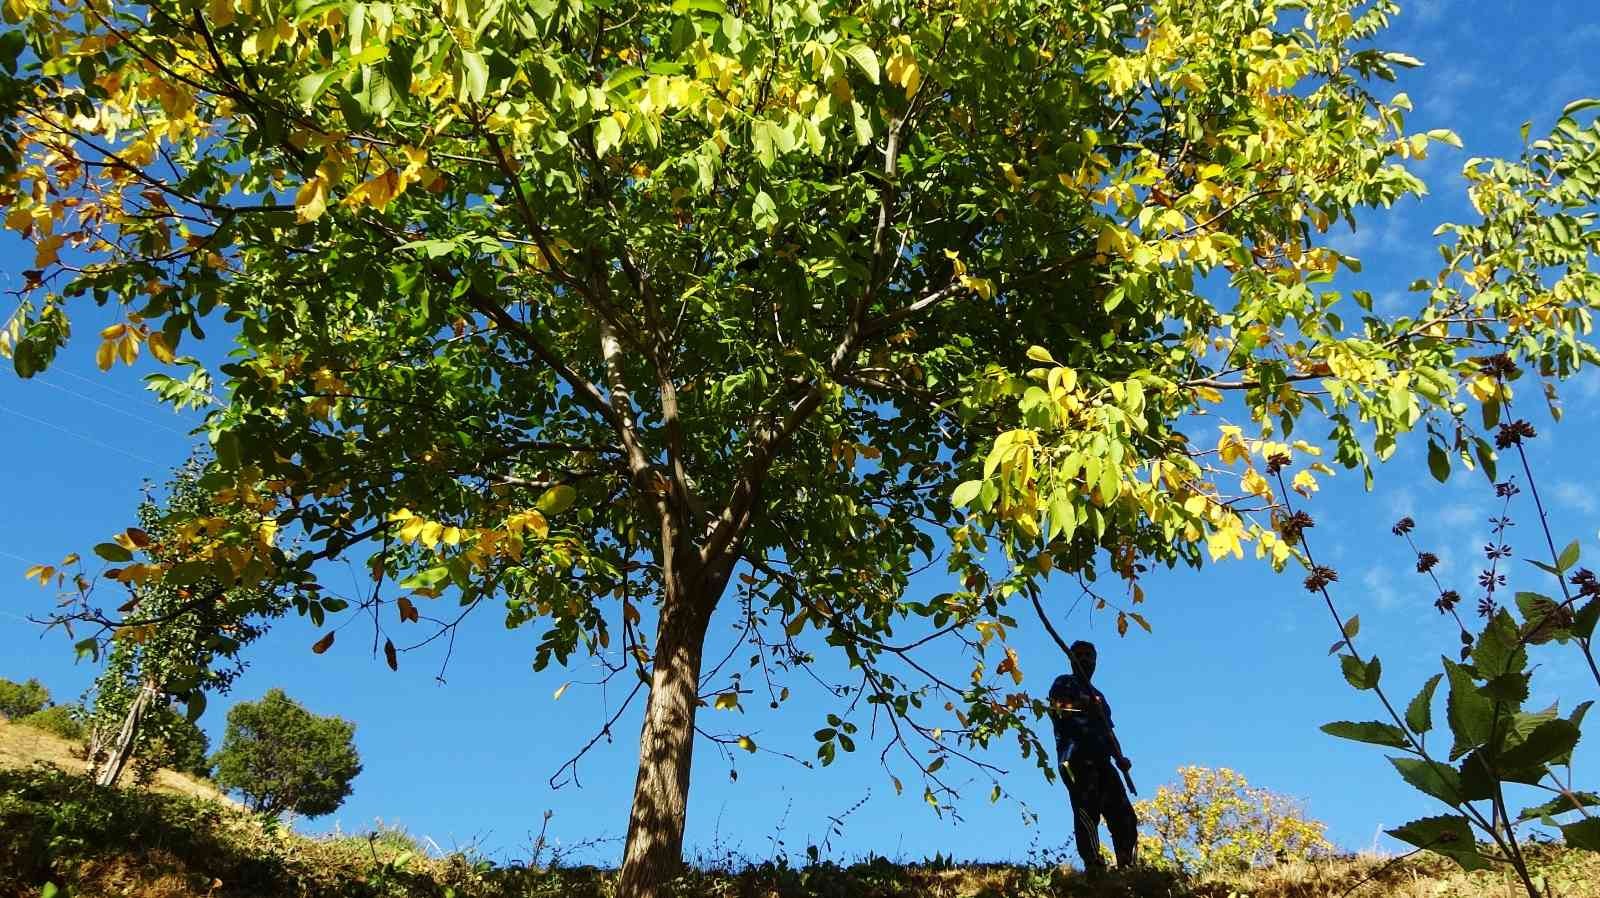 Erzincan’ın Sancak kenti Kemah: 32 bin ceviz ağacı yetiştiriciliği ile ekonomiye katkı sağlıyor #erzincan